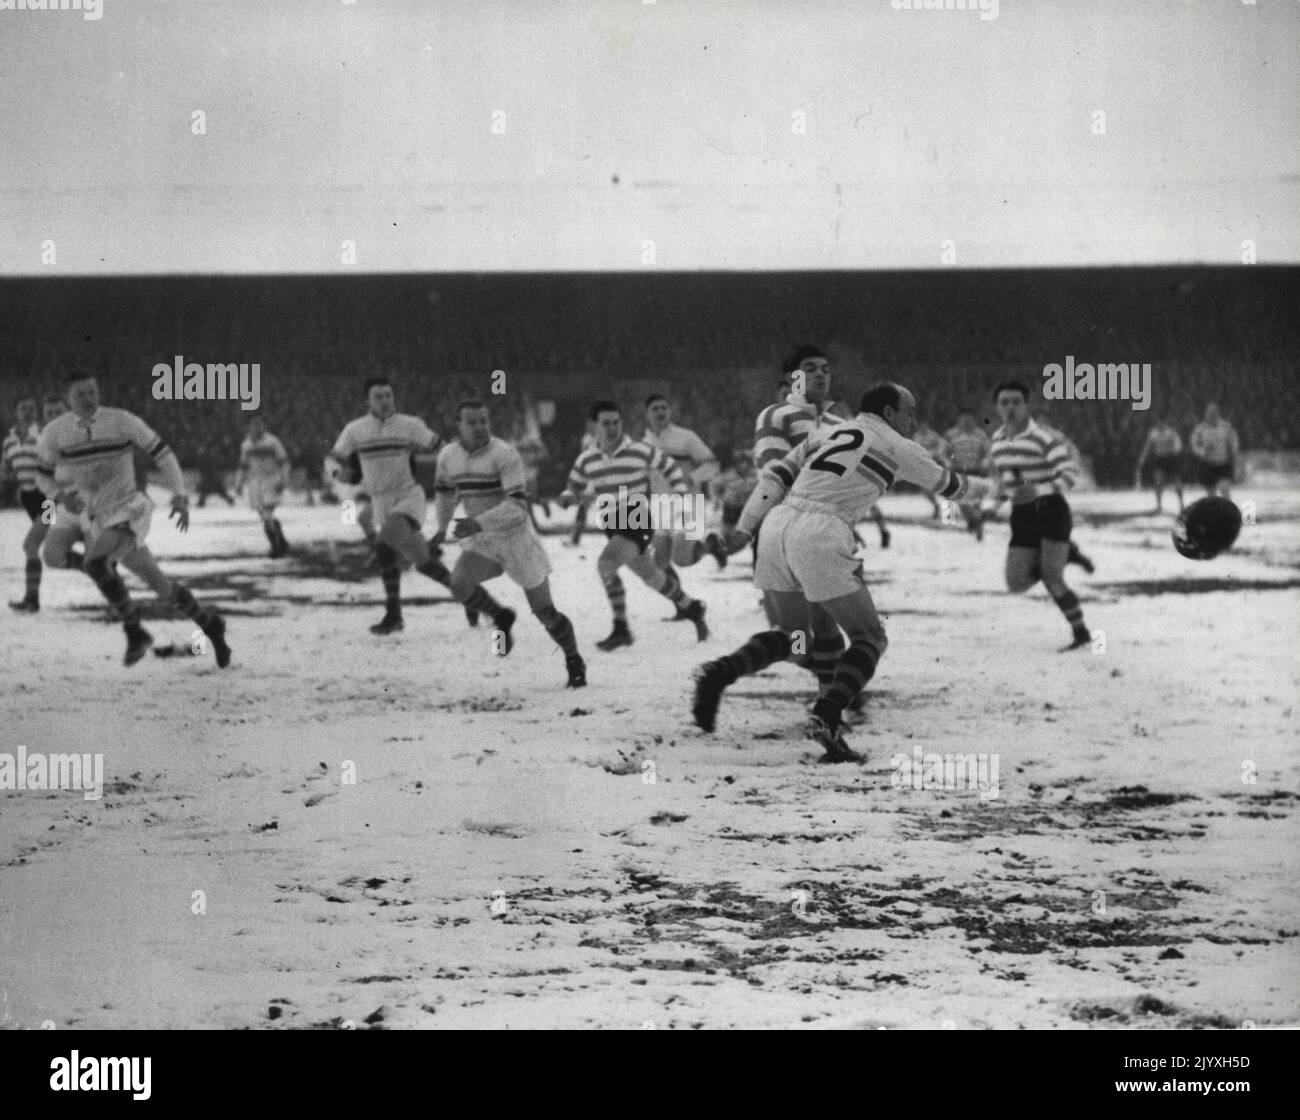 Oldham contra Warrington - Liga de Rugby en el ***** Warrington se convierte en el líder de la Liga al derrotar a Oldham en Oldham Davies A. (Oldham) posee al cantante australiano Barrow (Oldham) cuando es presionado por Brian Bevan (Warrington). 15 de enero de 1955. Foto de stock